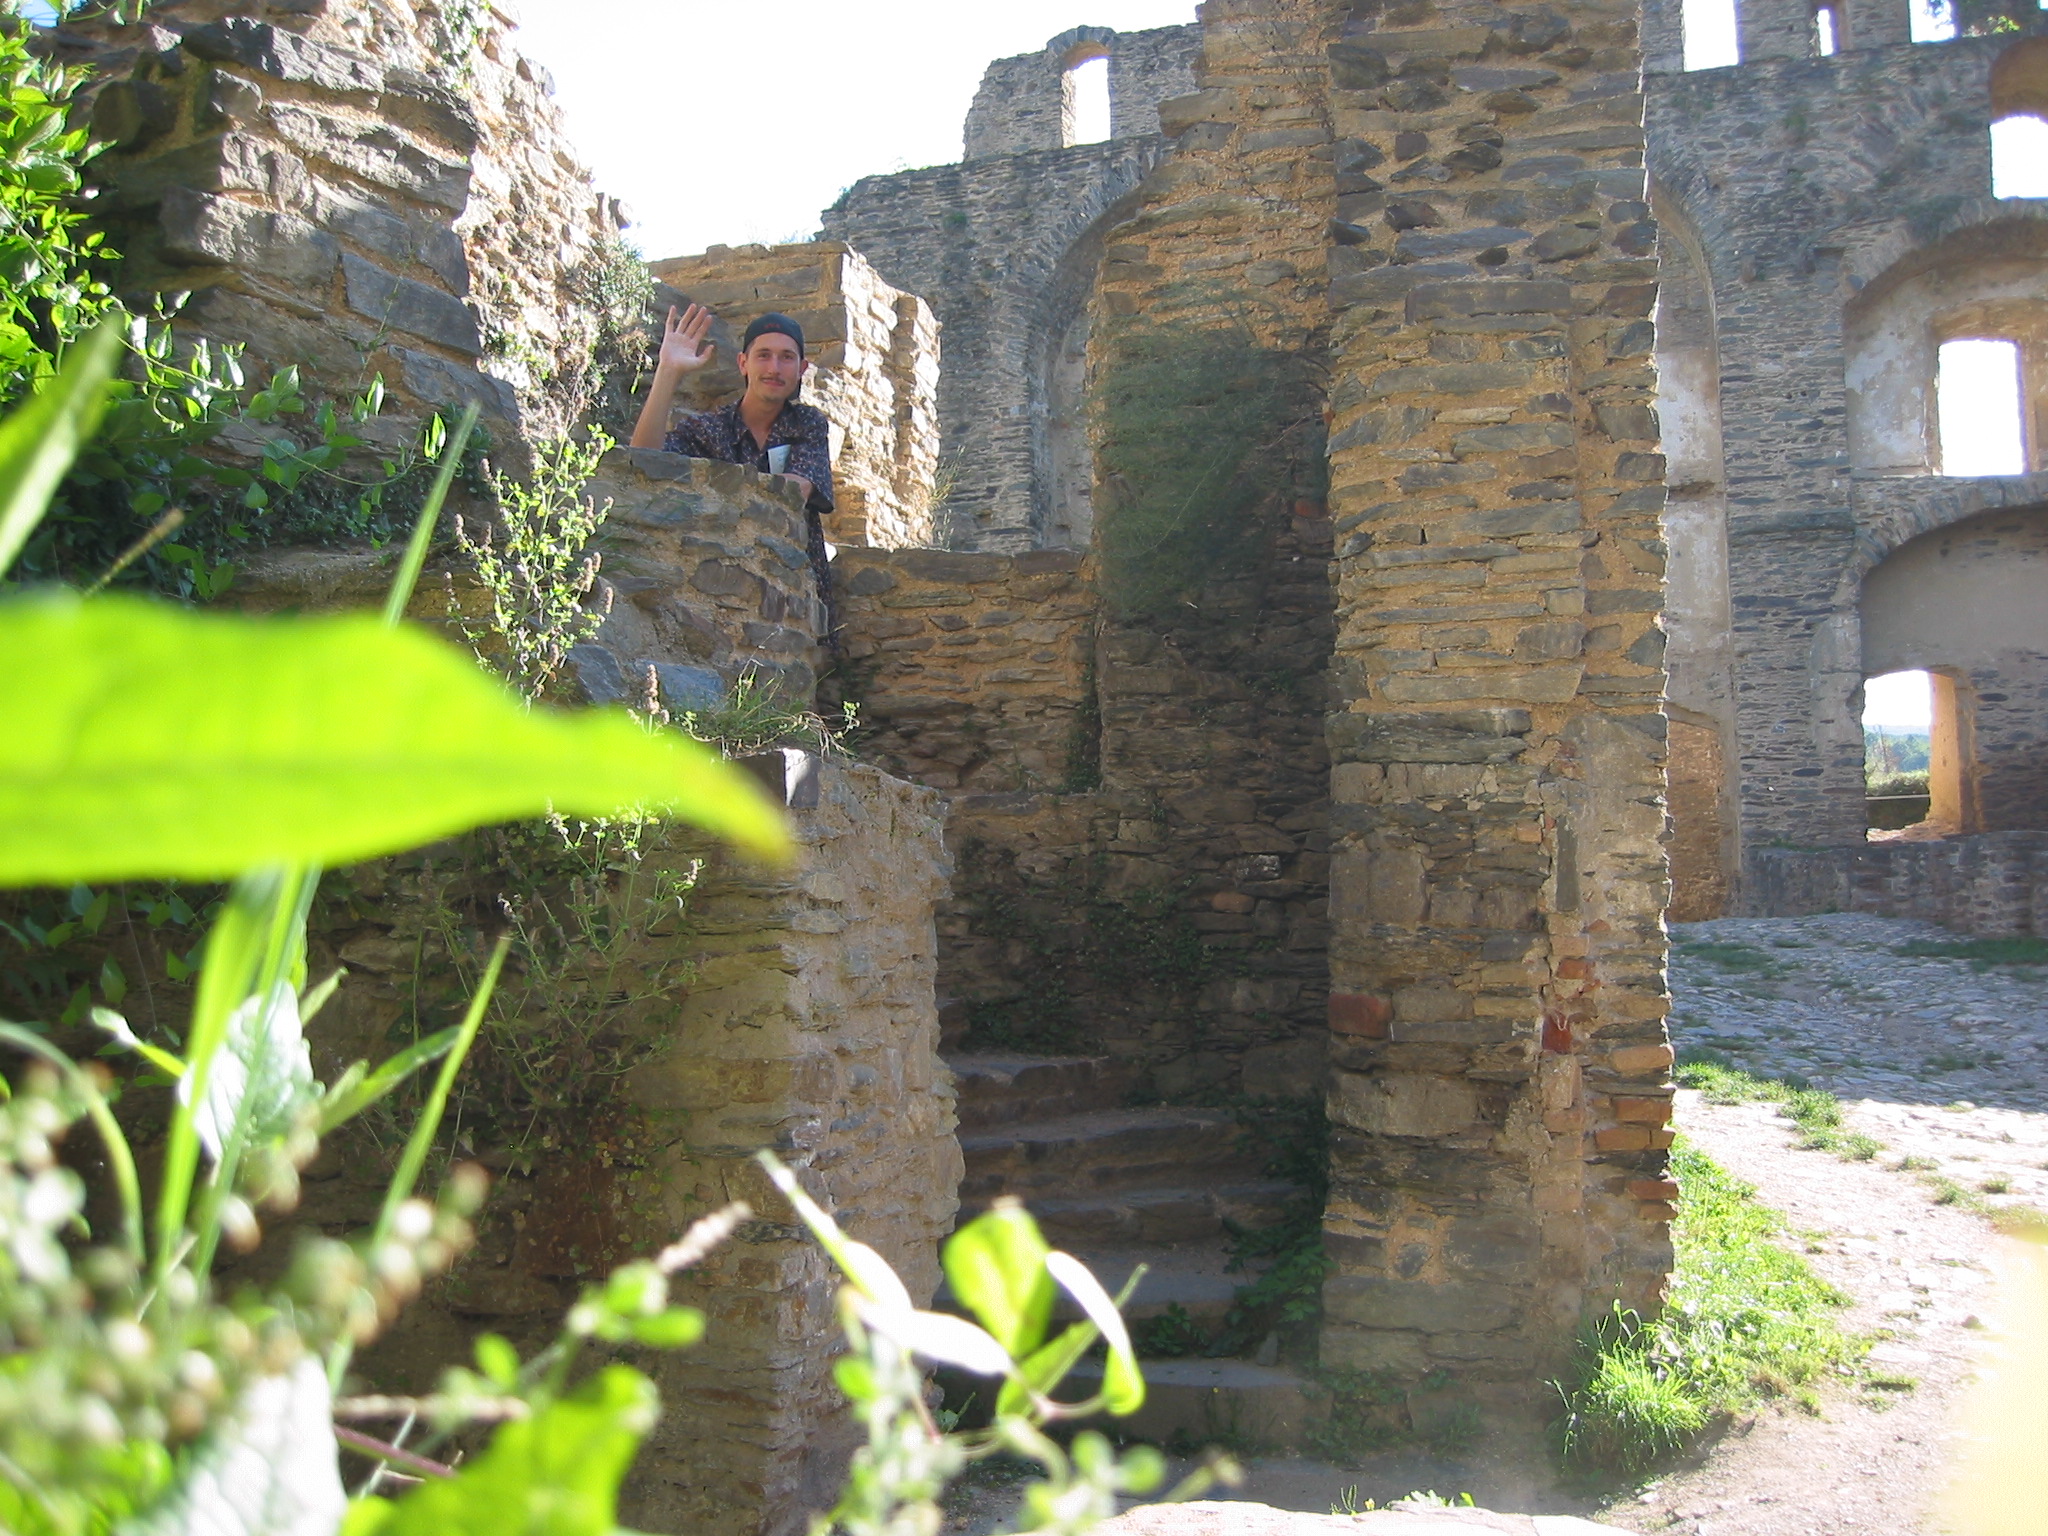 Vince in Burg Rheinfels, ruins of vaults